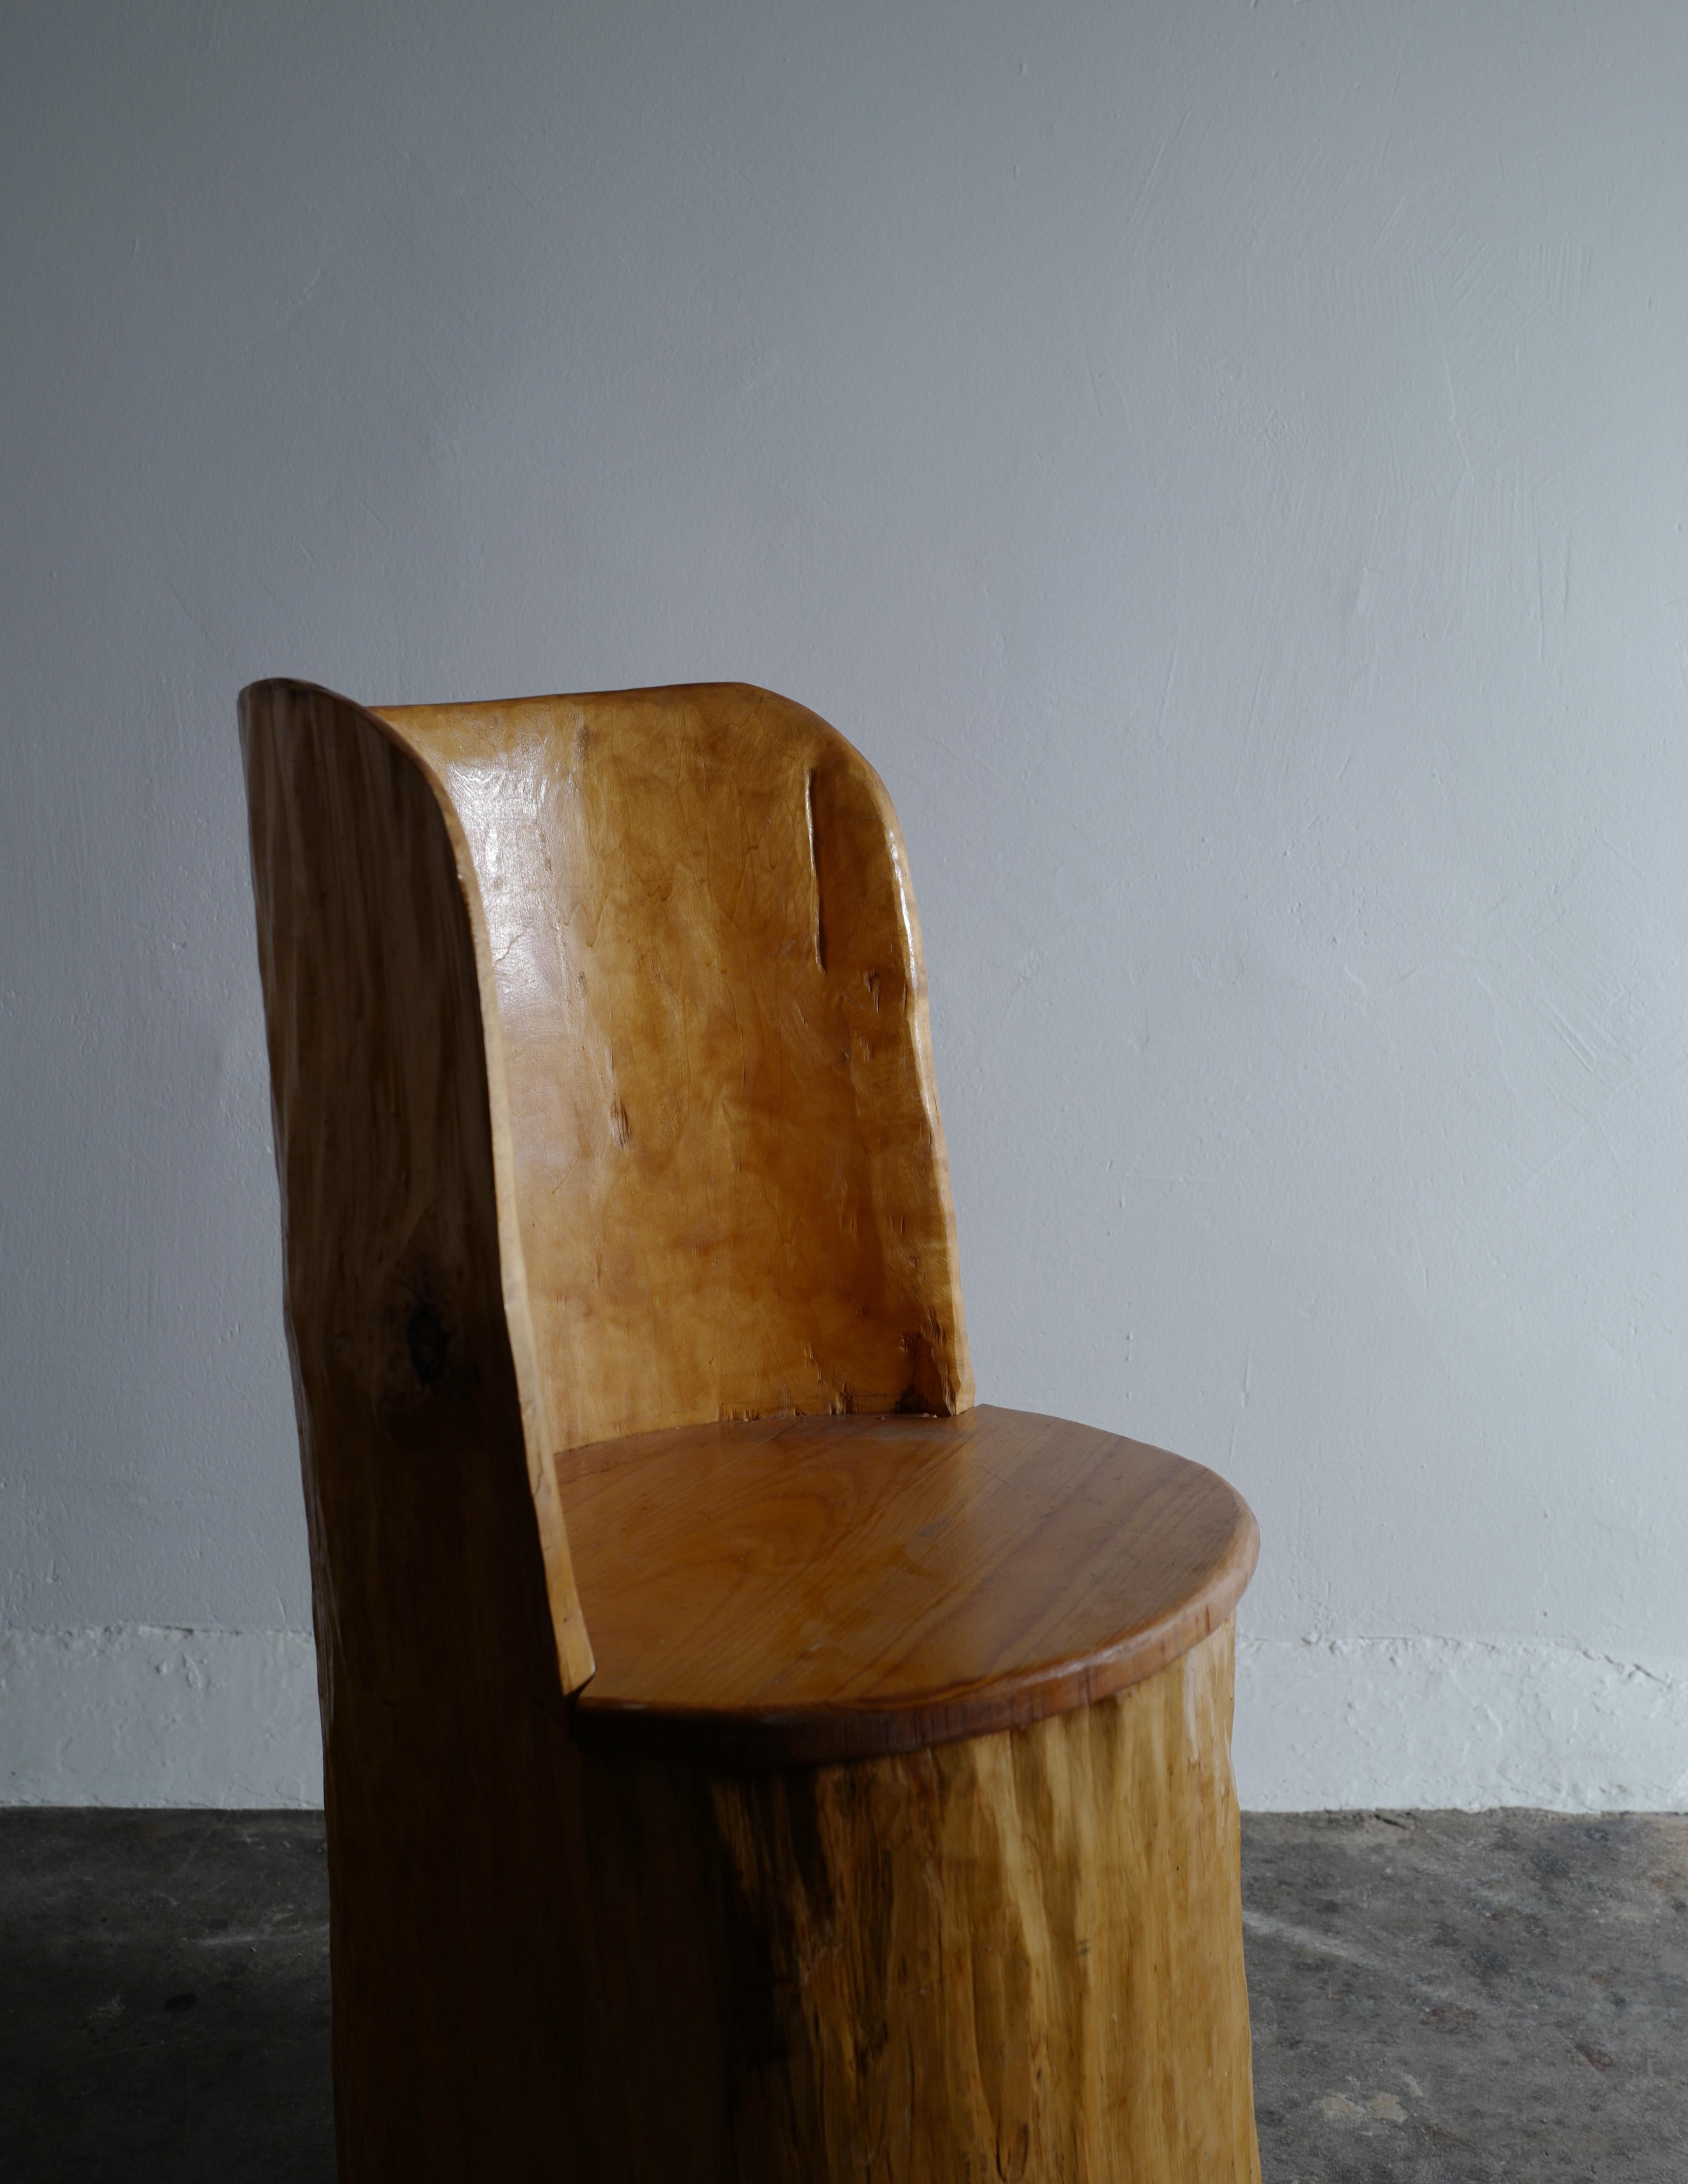 stump seat